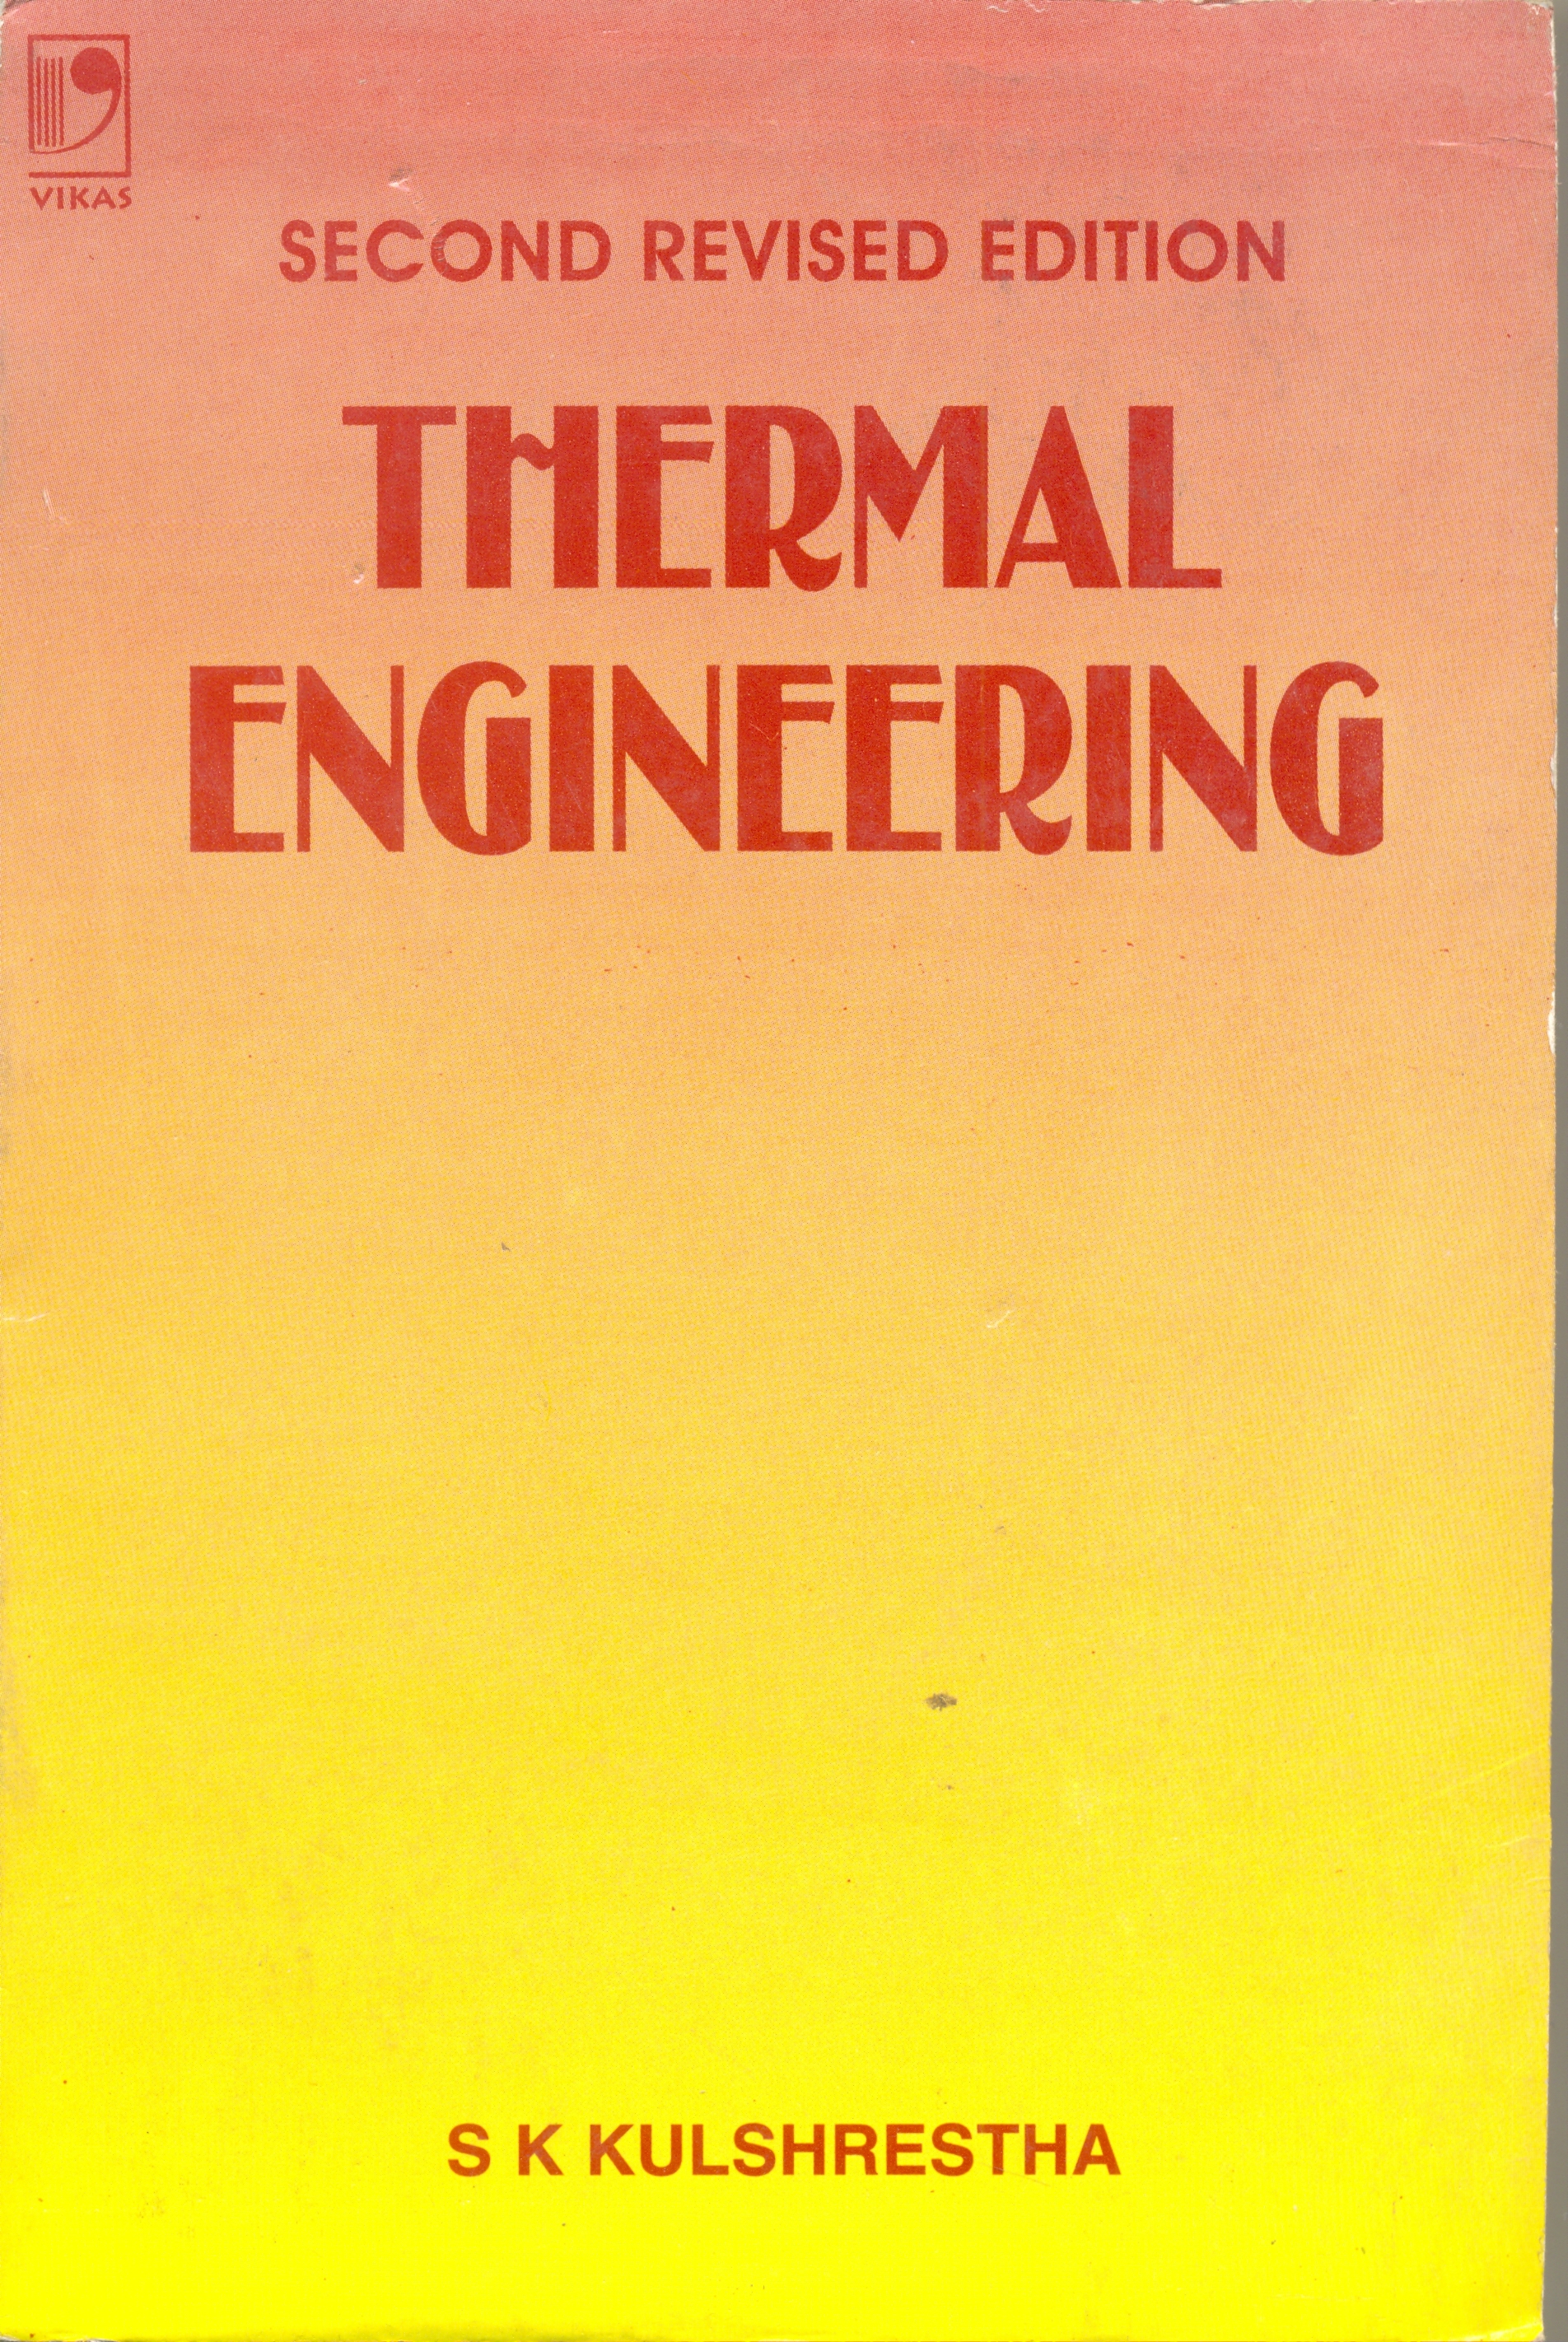 Thermal Engineering